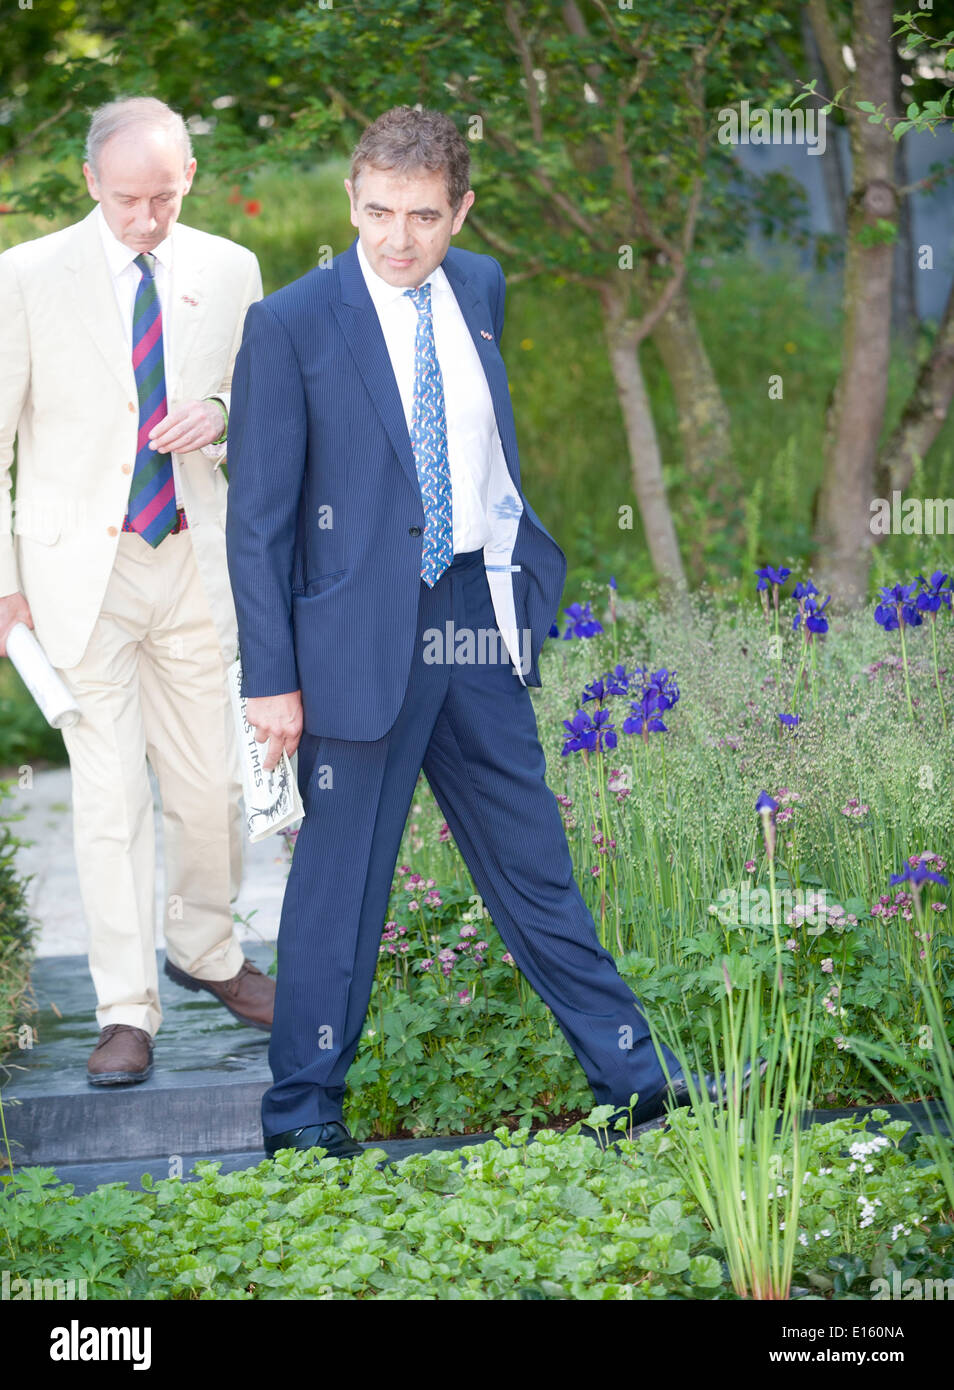 Rowan Atkinson al VIP preview giorno del Chelsea Flower Show presso il Royal Hospital Chelsea il 19 maggio 2014 a Londra, Inghilterra Foto di Brian Jordan Foto Stock